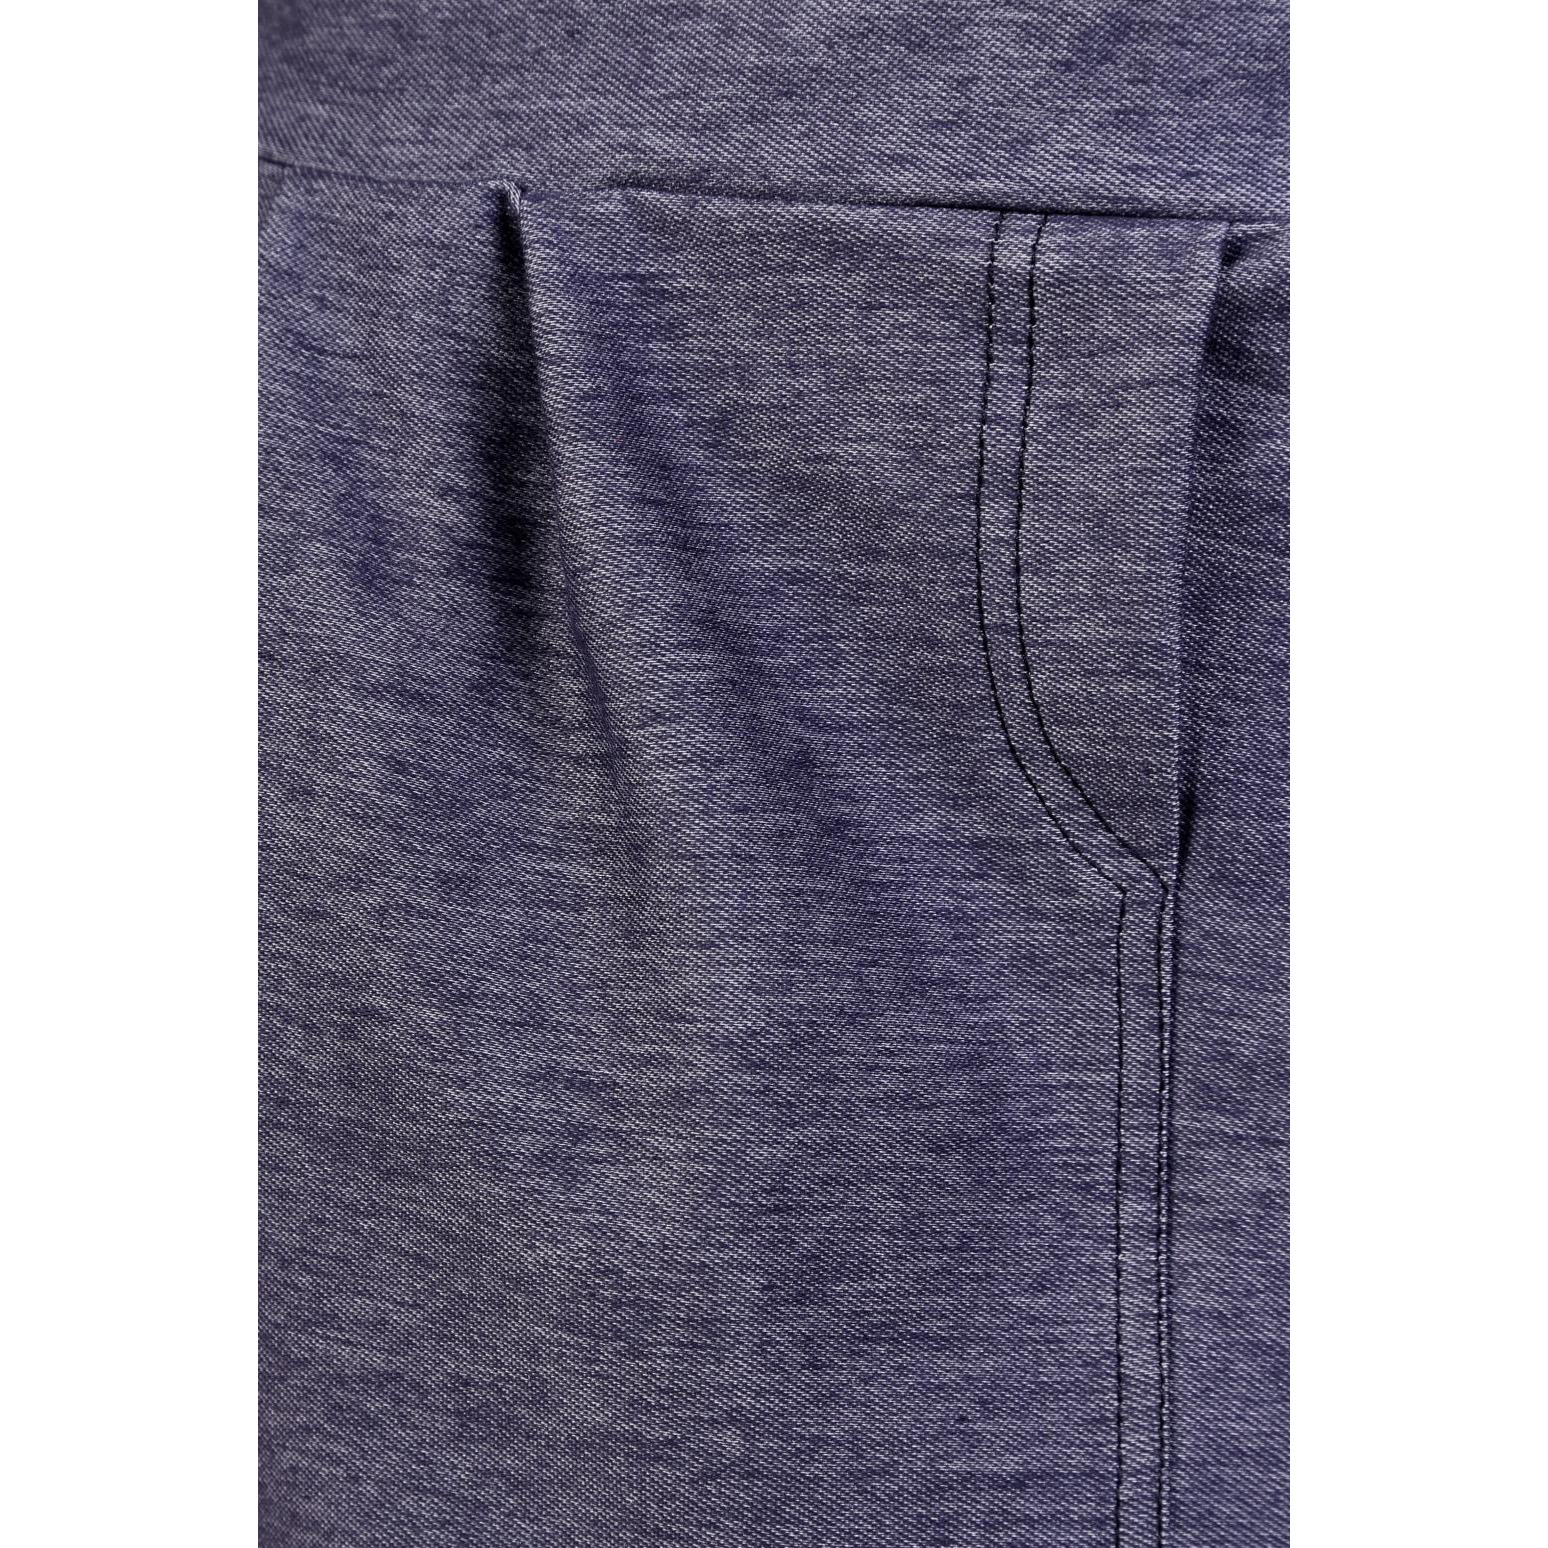 Женская юбка "Зара" Синий, размер 44 от Rastl